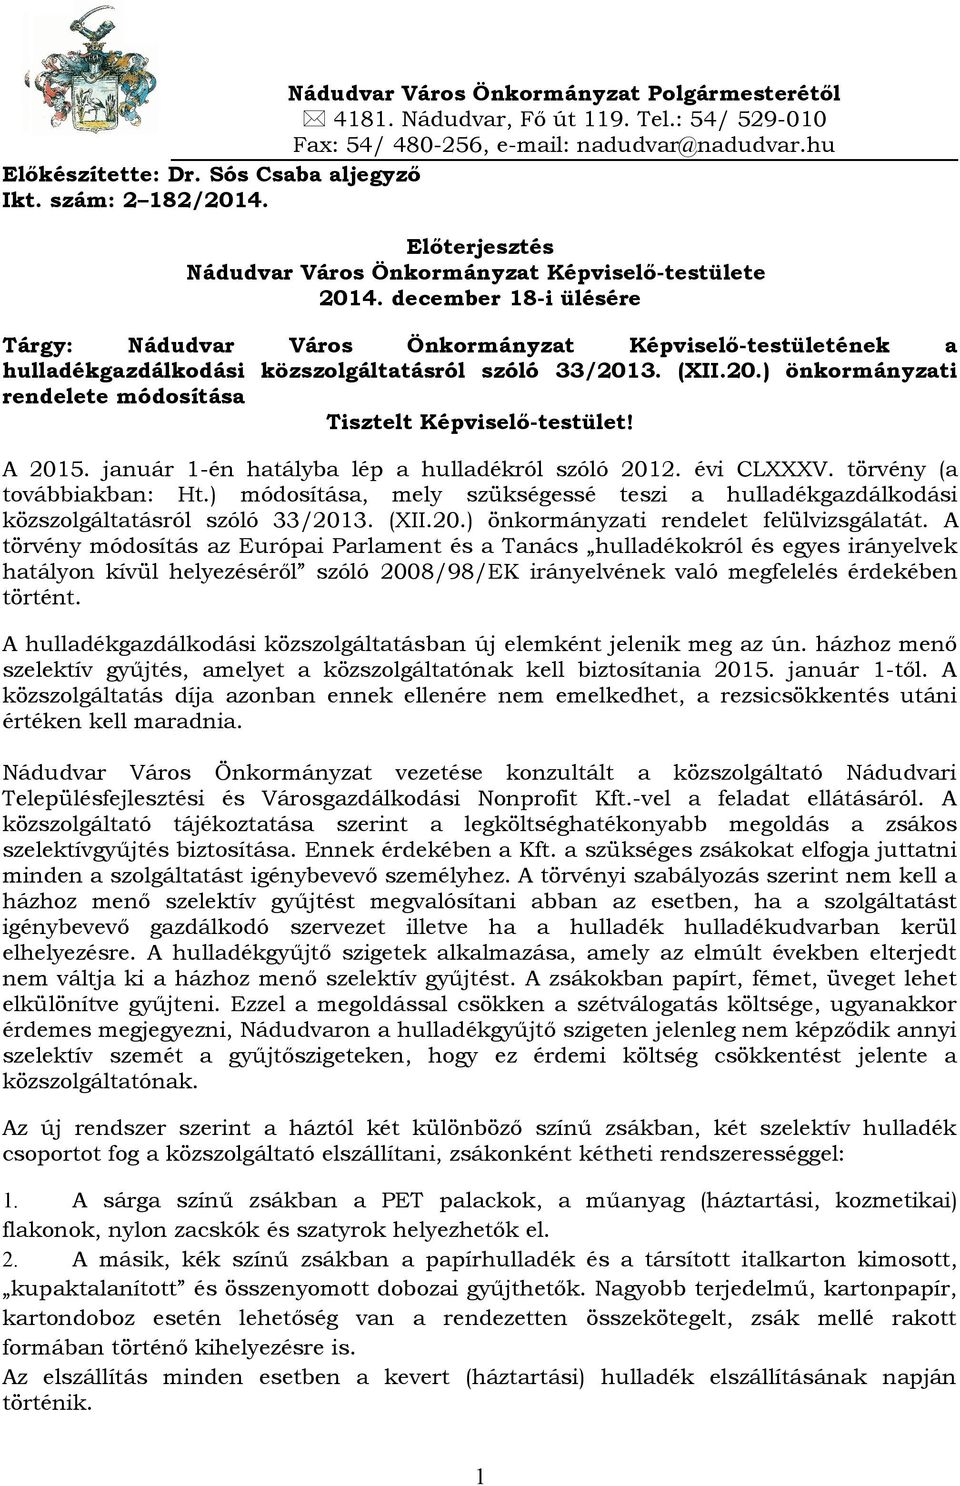 december 18-i ülésére Tárgy: Nádudvar Város Önkormányzat Képviselő-testületének a hulladékgazdálkodási közszolgáltatásról szóló 33/2013. (XII.20.) önkormányzati rendelete módosítása Tisztelt Képviselő-testület!